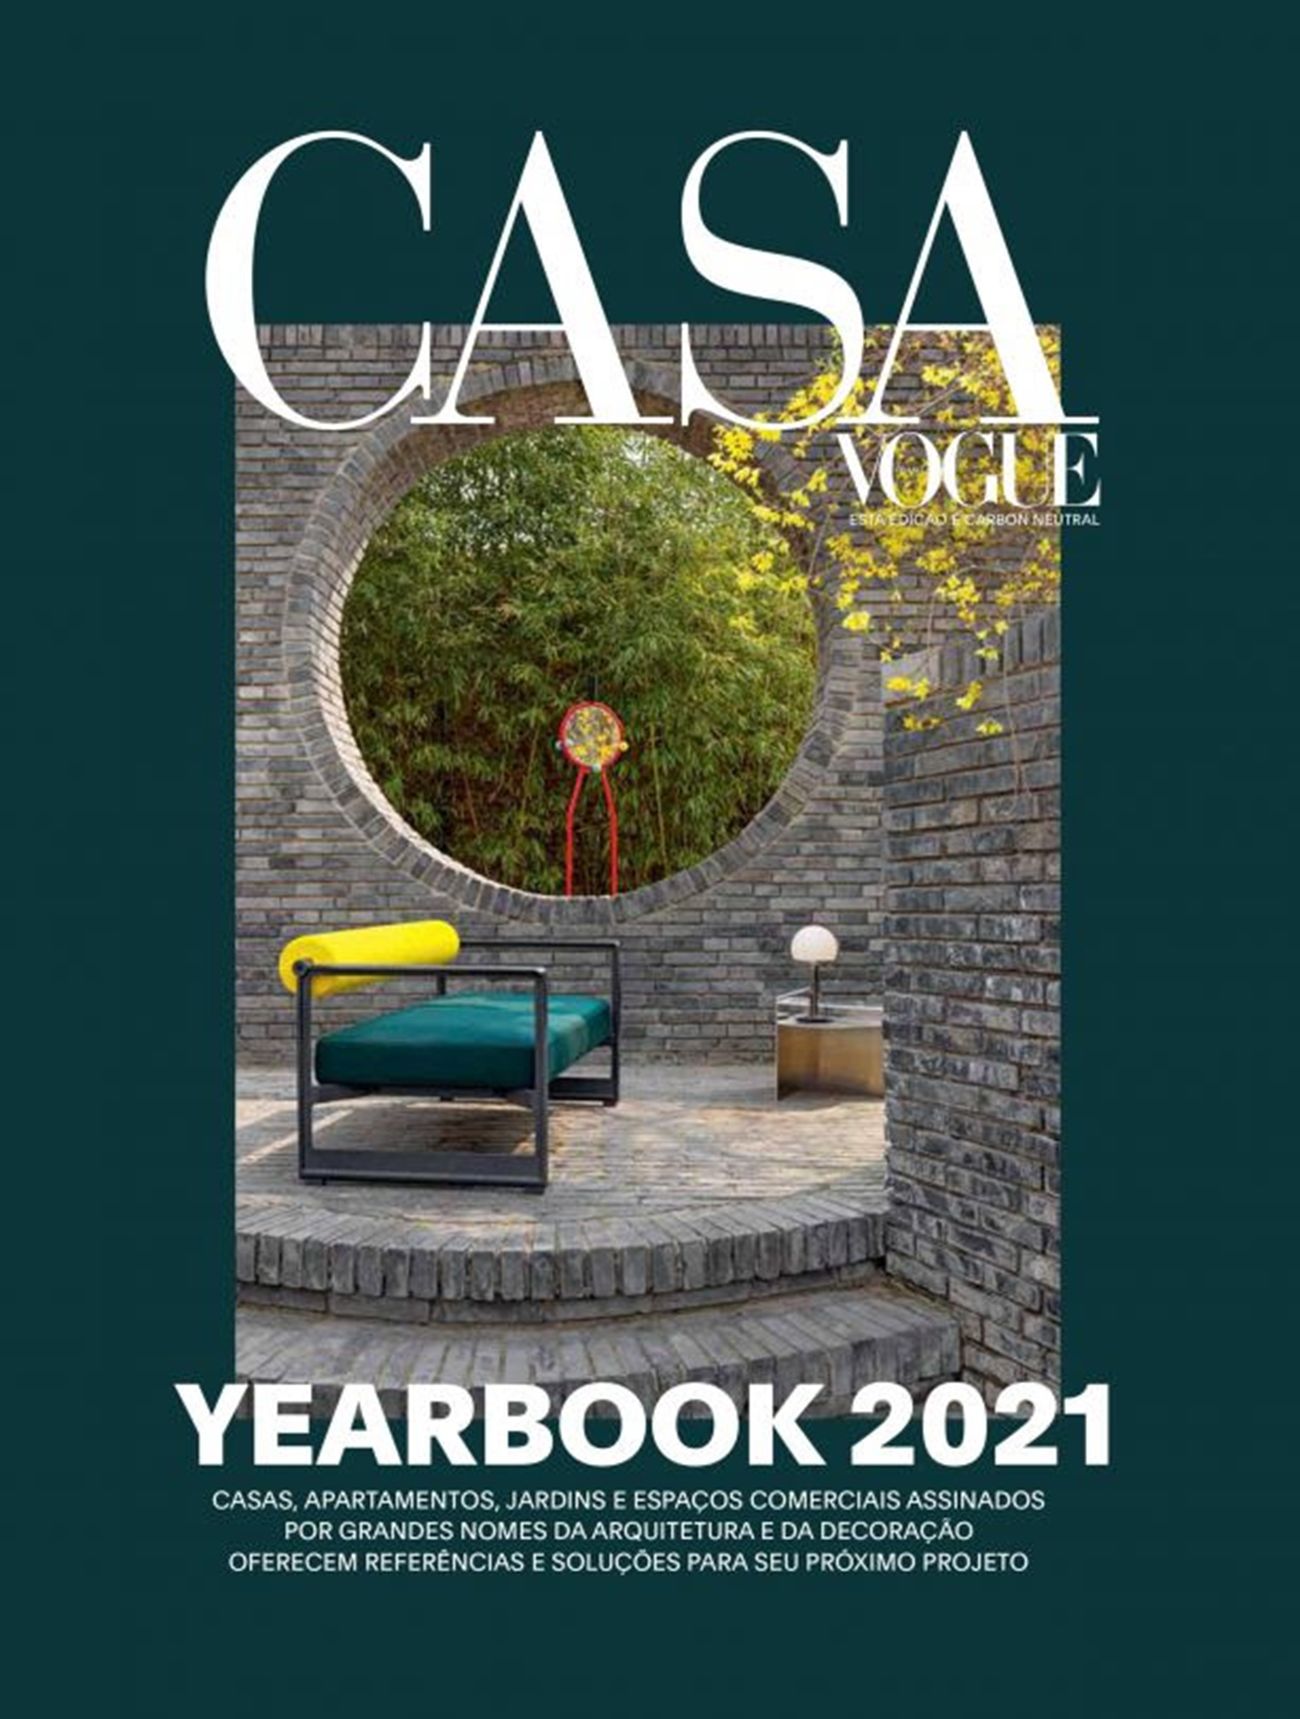 Casa Vogue reúne referências de arquitetura e decoração no Yearbook 2021!